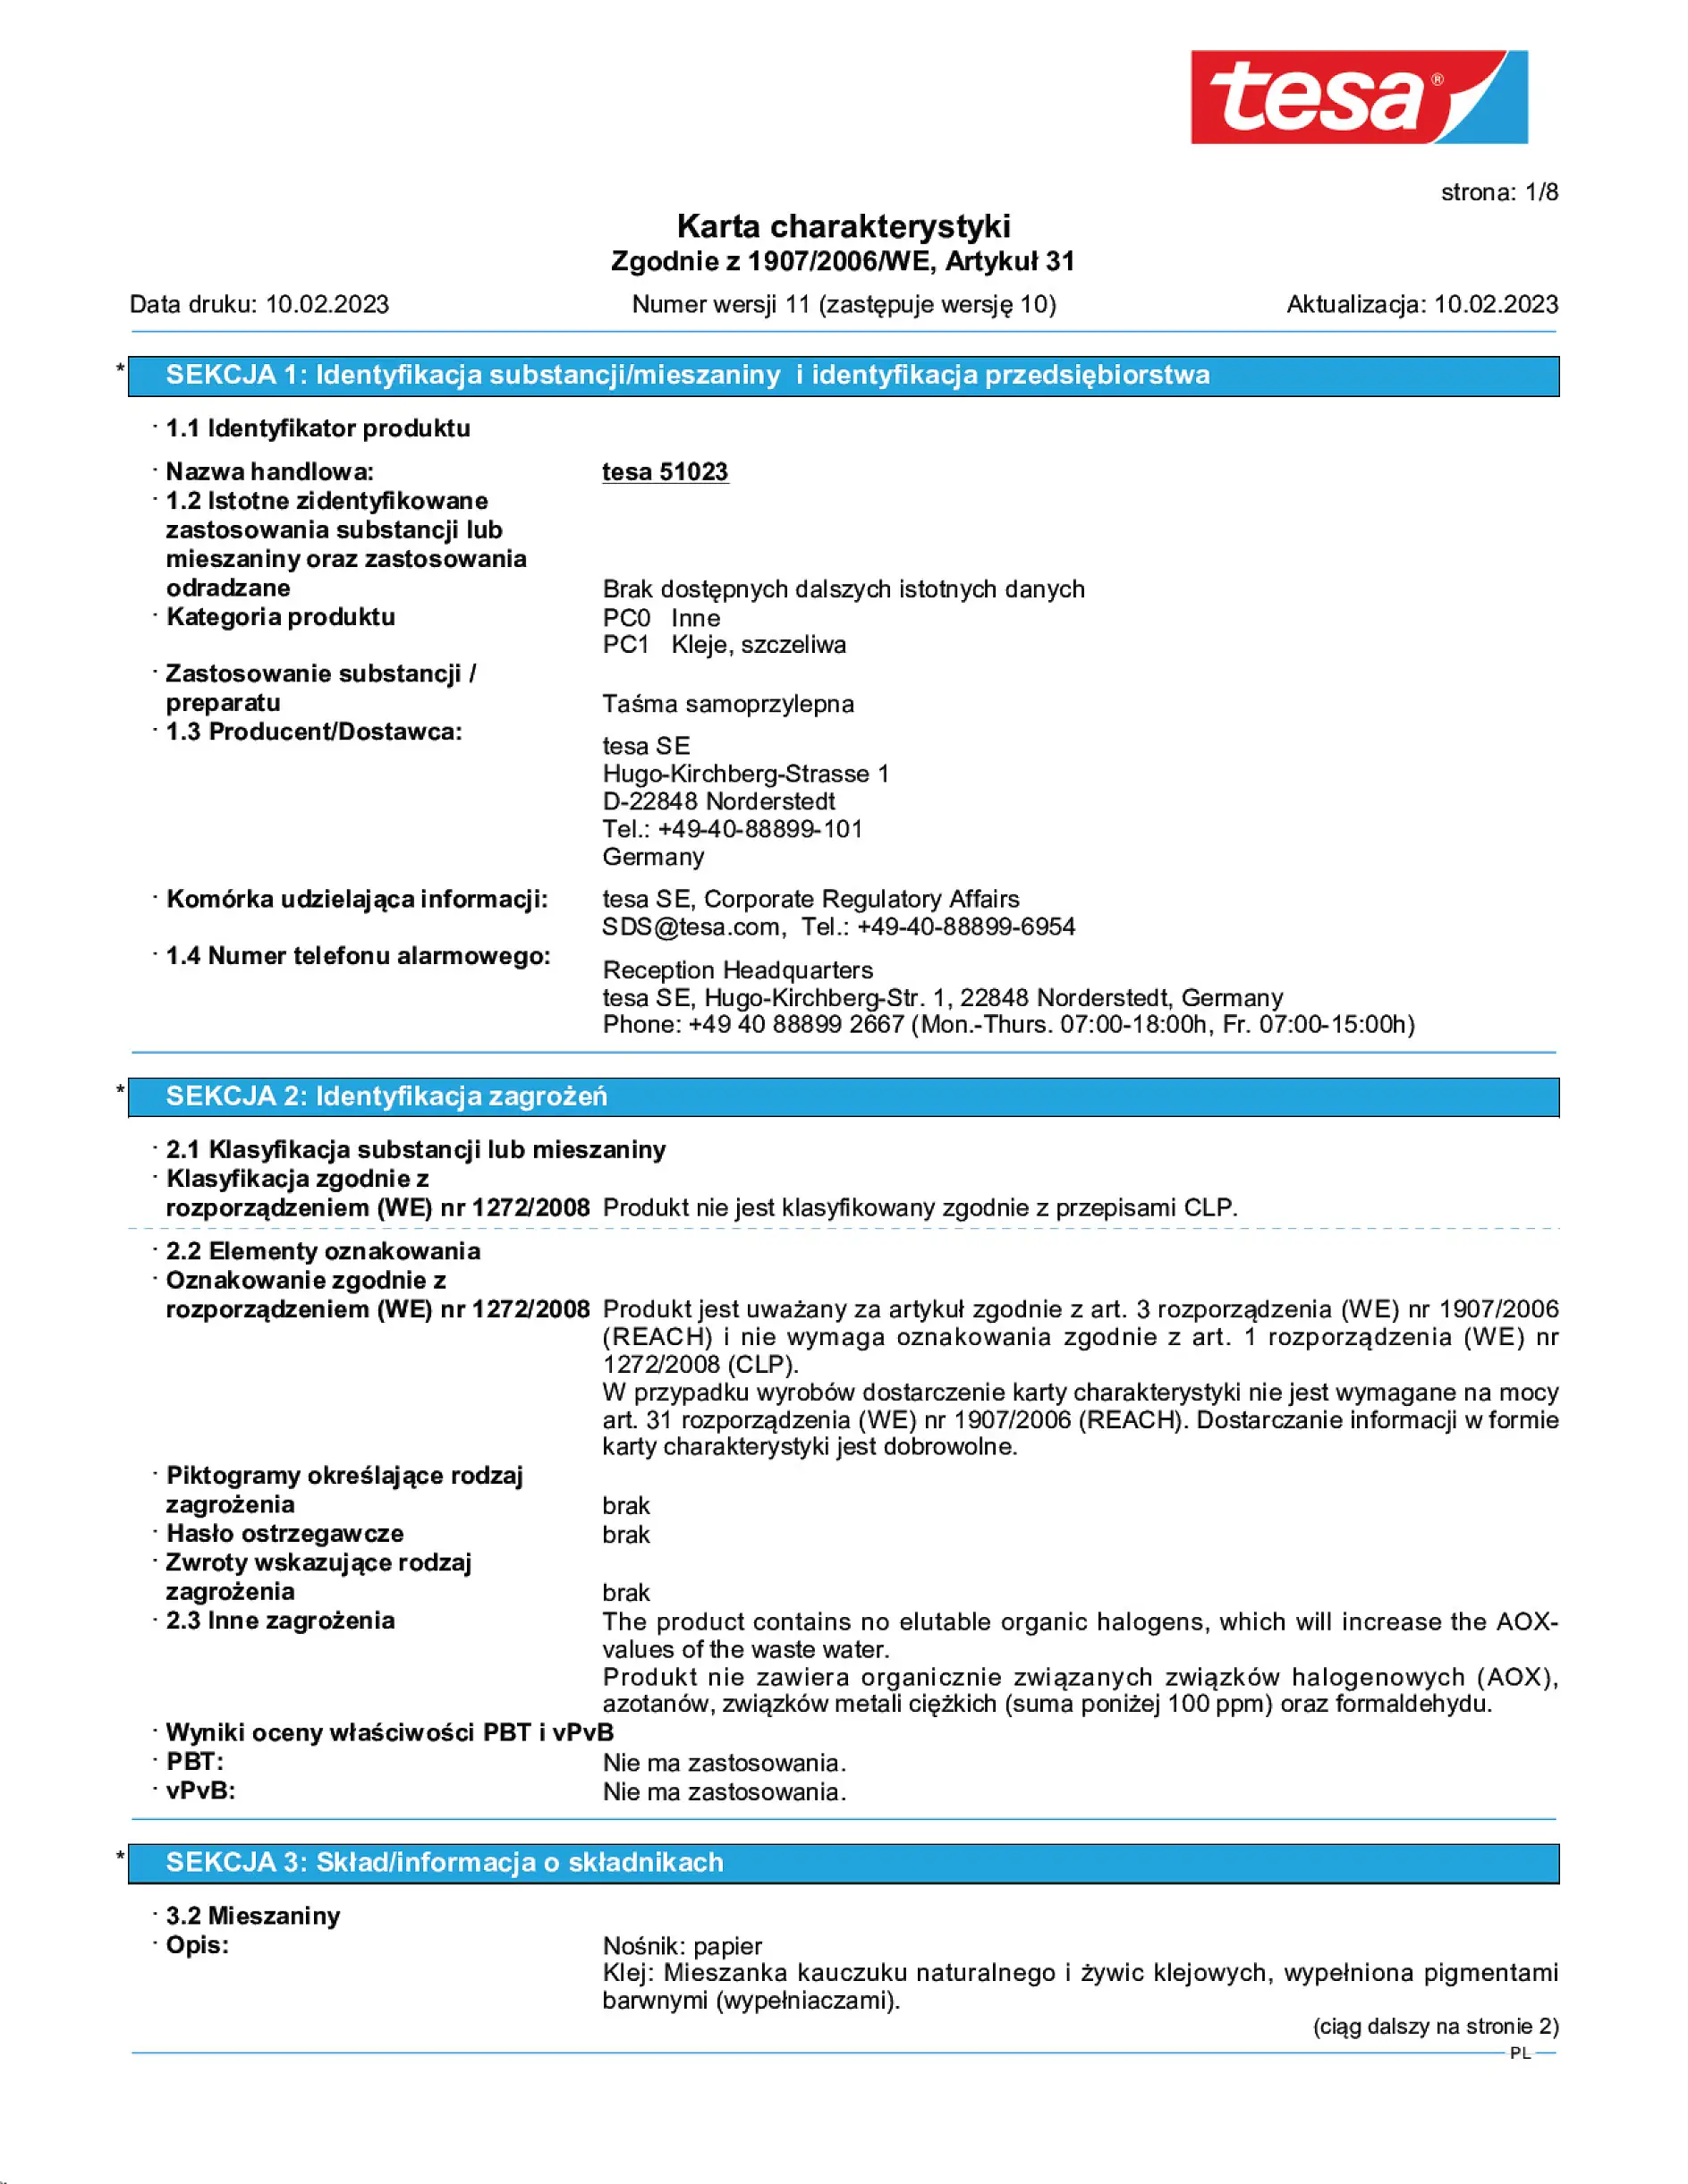 Safety data sheet_tesa® Professional 51023_pl-PL_v11